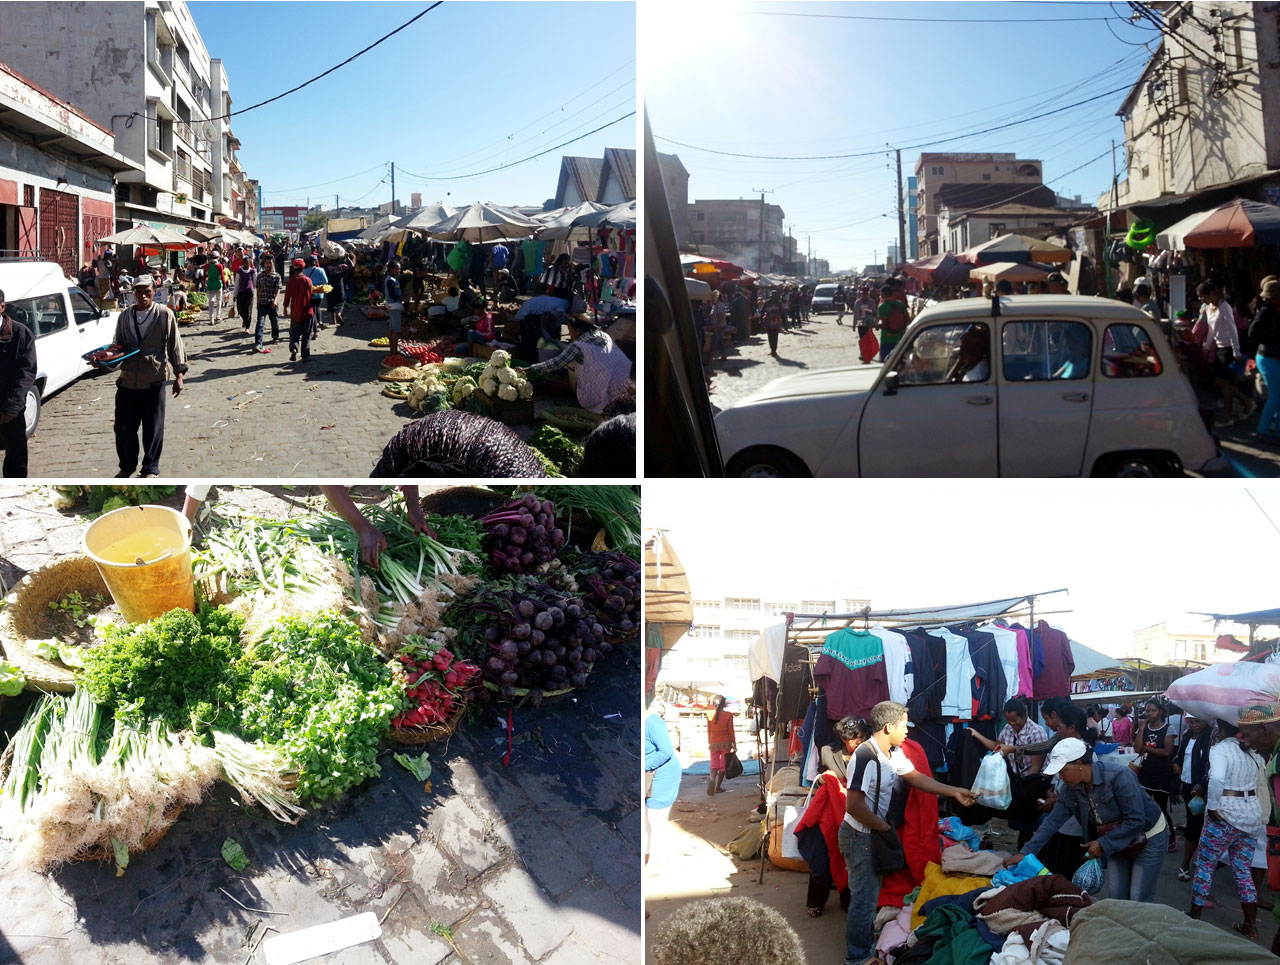 Antananarivo: The Marketplace in Tana